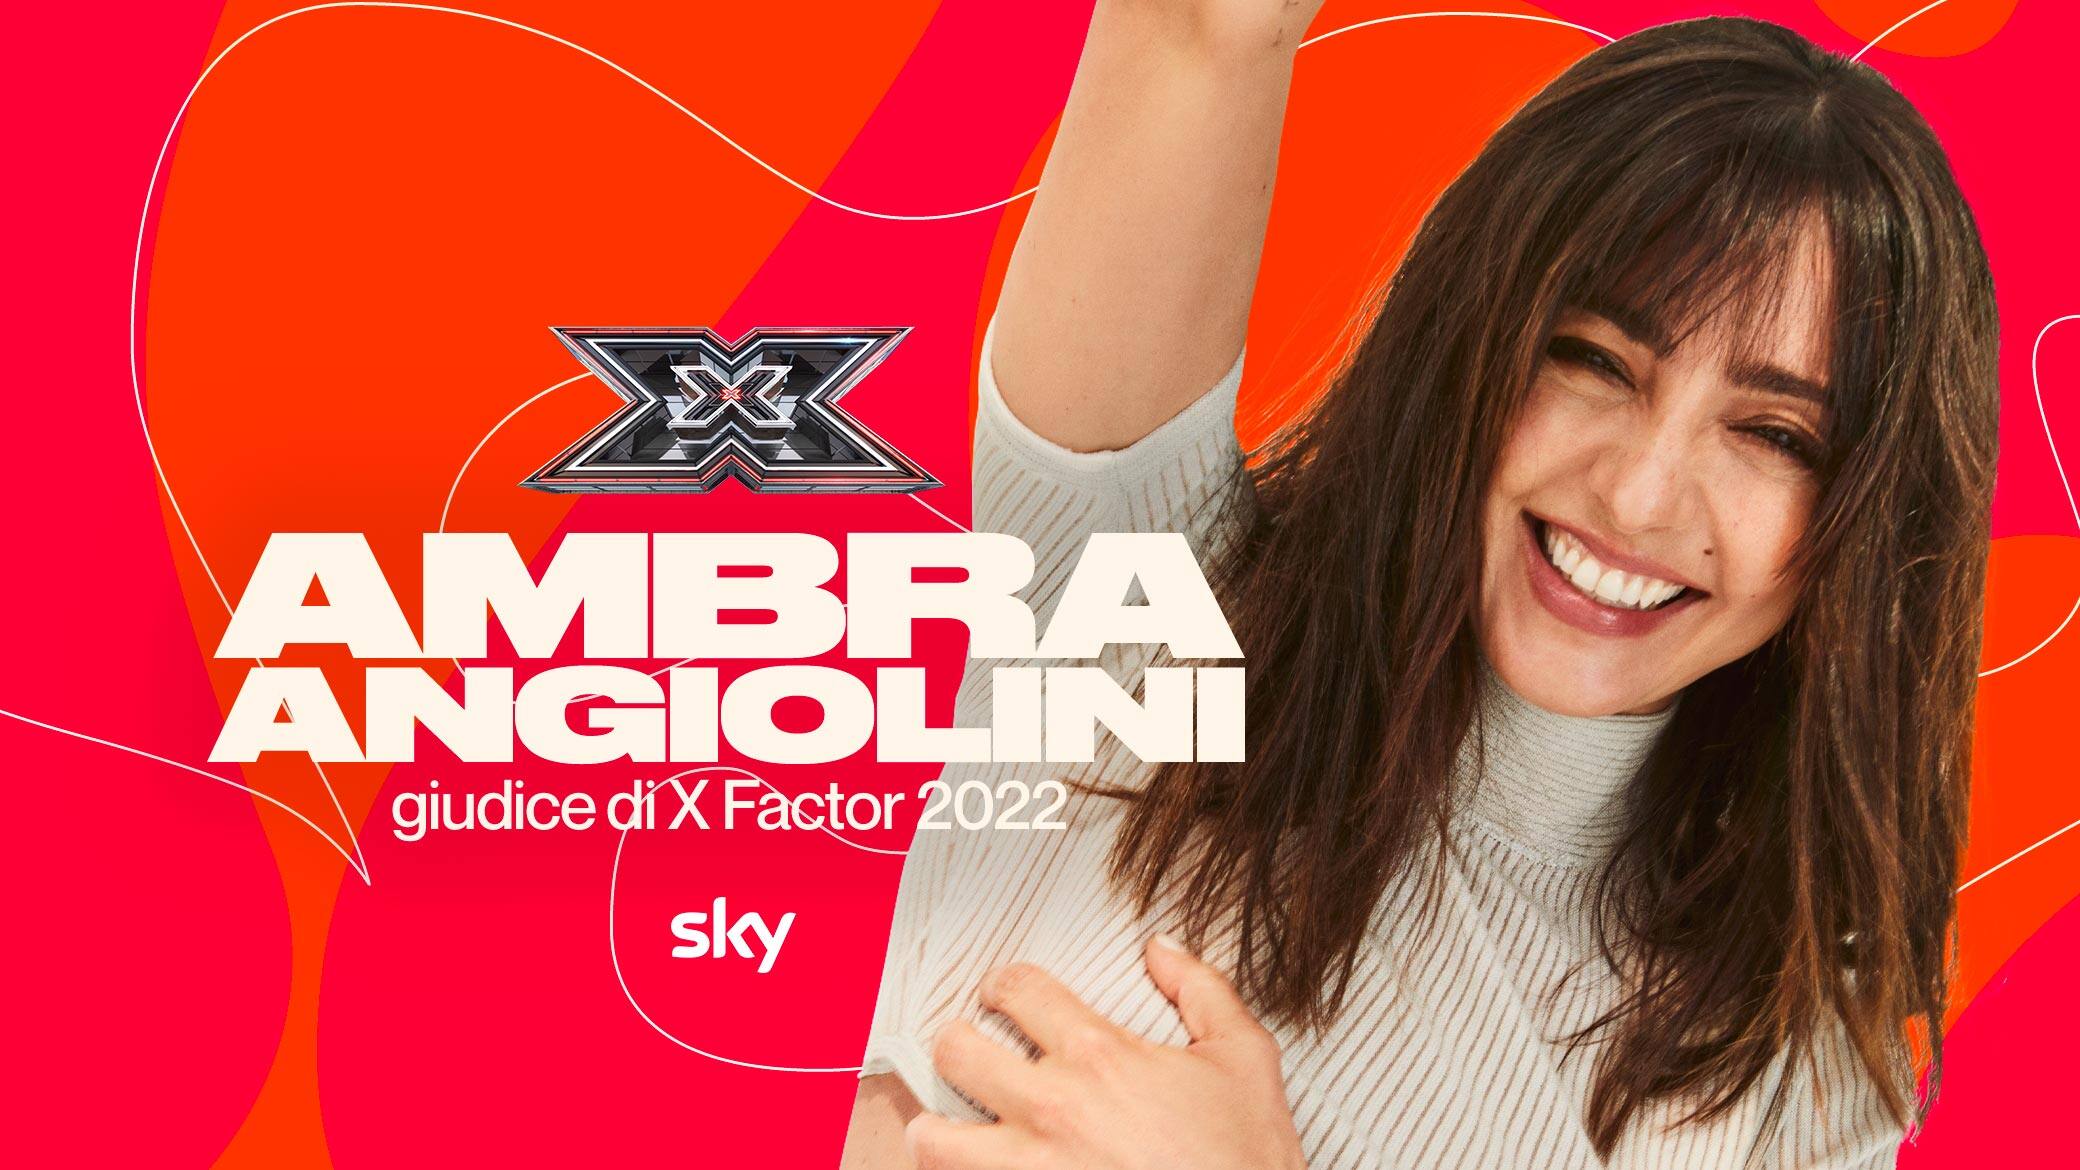 Ambra Angiolini giudice a X Factor 2022